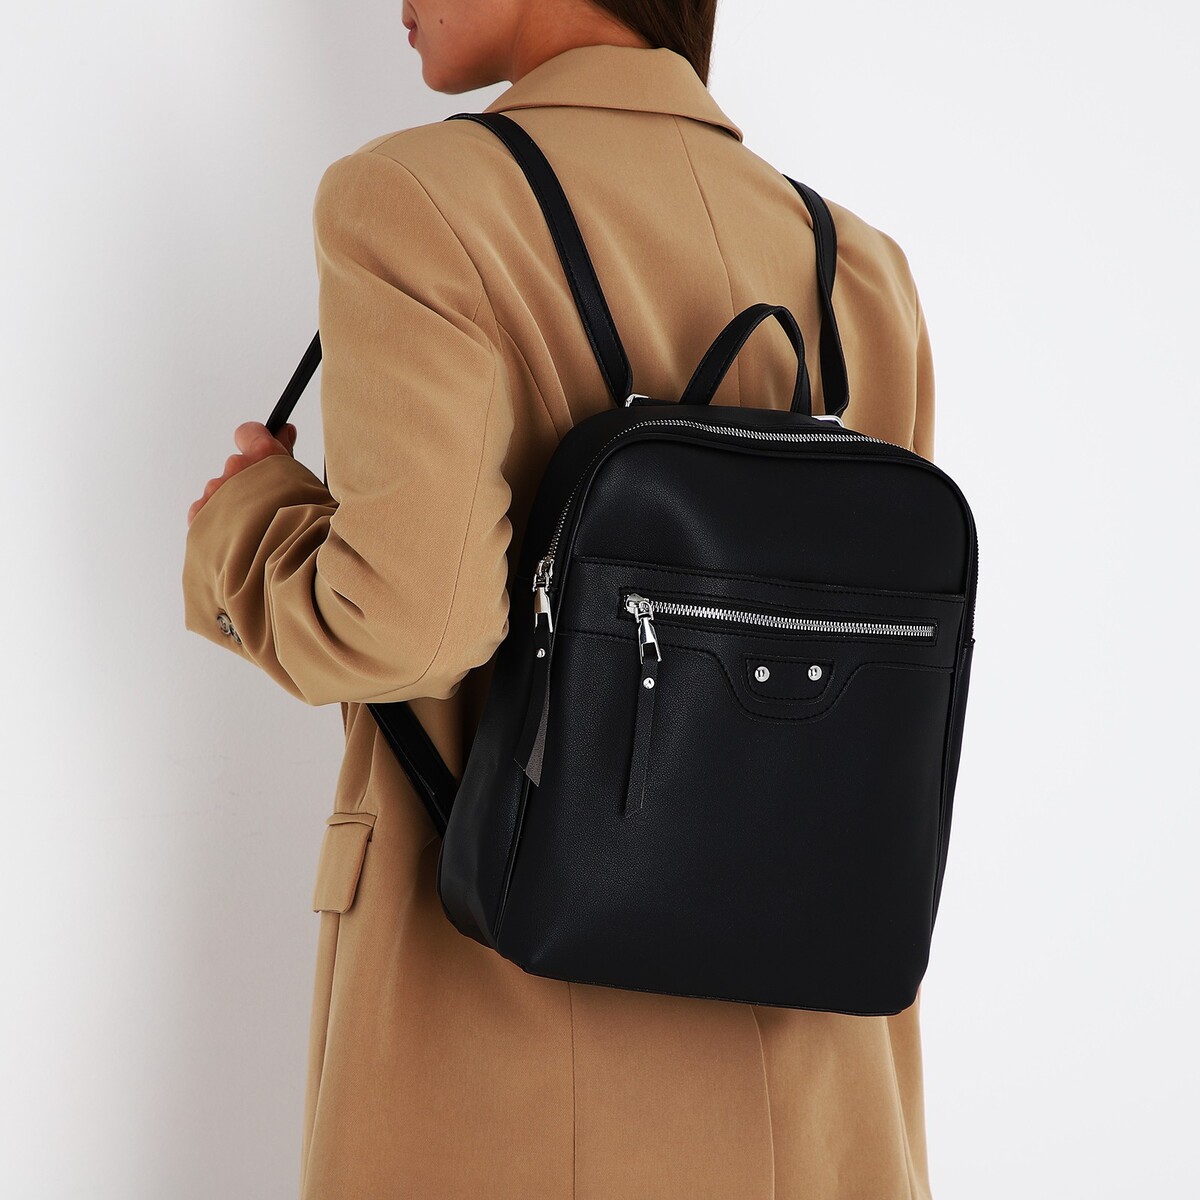 Рюкзак женский из искусственной кожи на молнии, 3 кармана, цвет черный